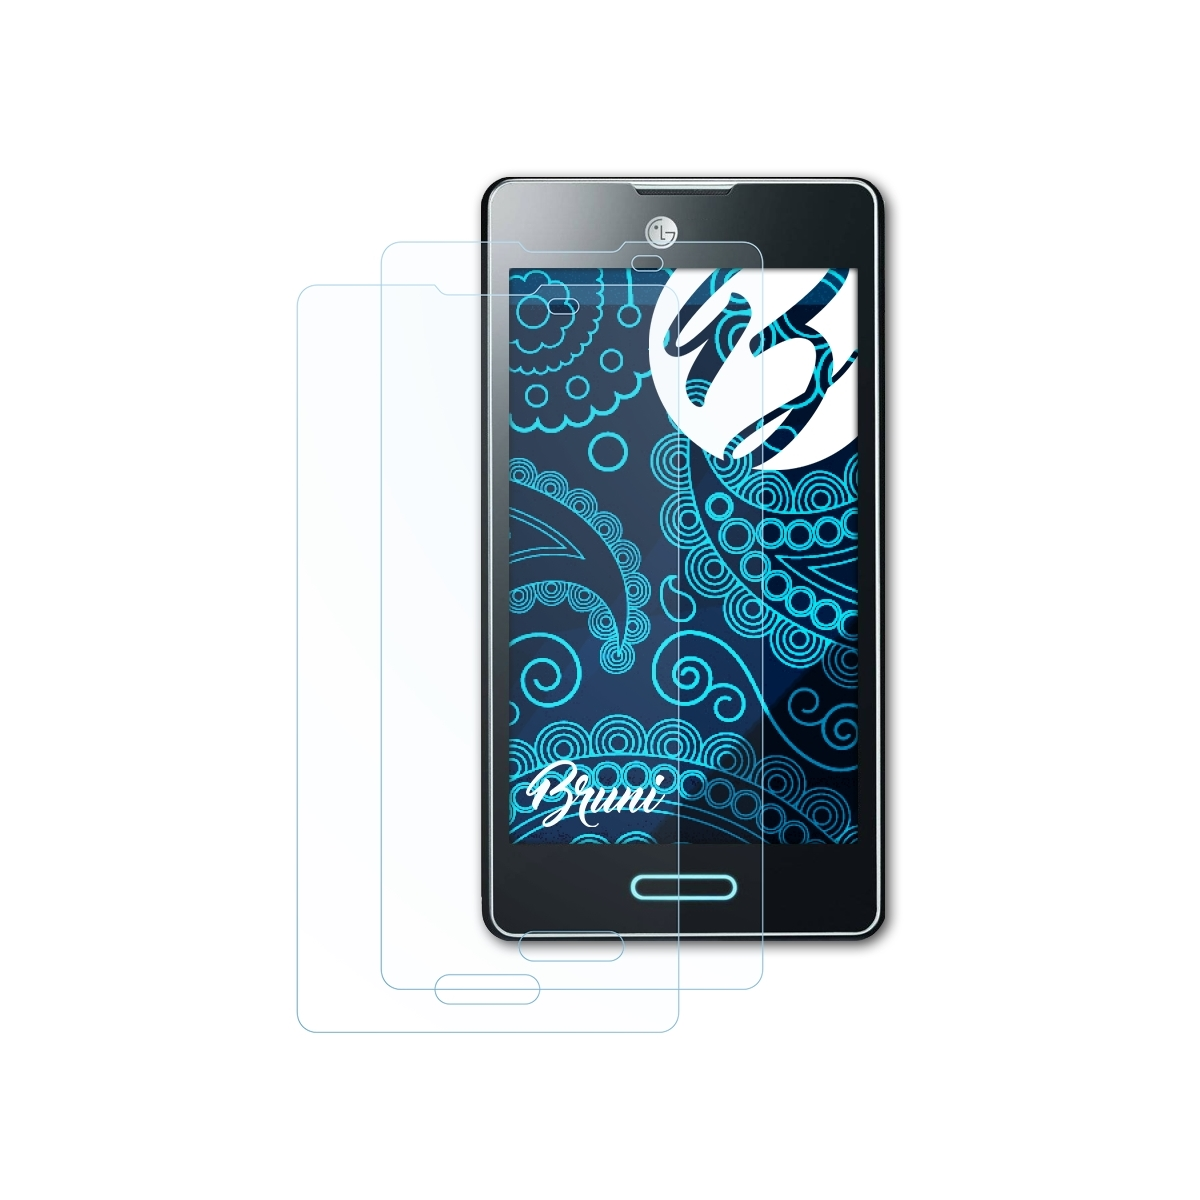 BRUNI 2x Basics-Clear (E460)) Schutzfolie(für LG Optimus L5 II